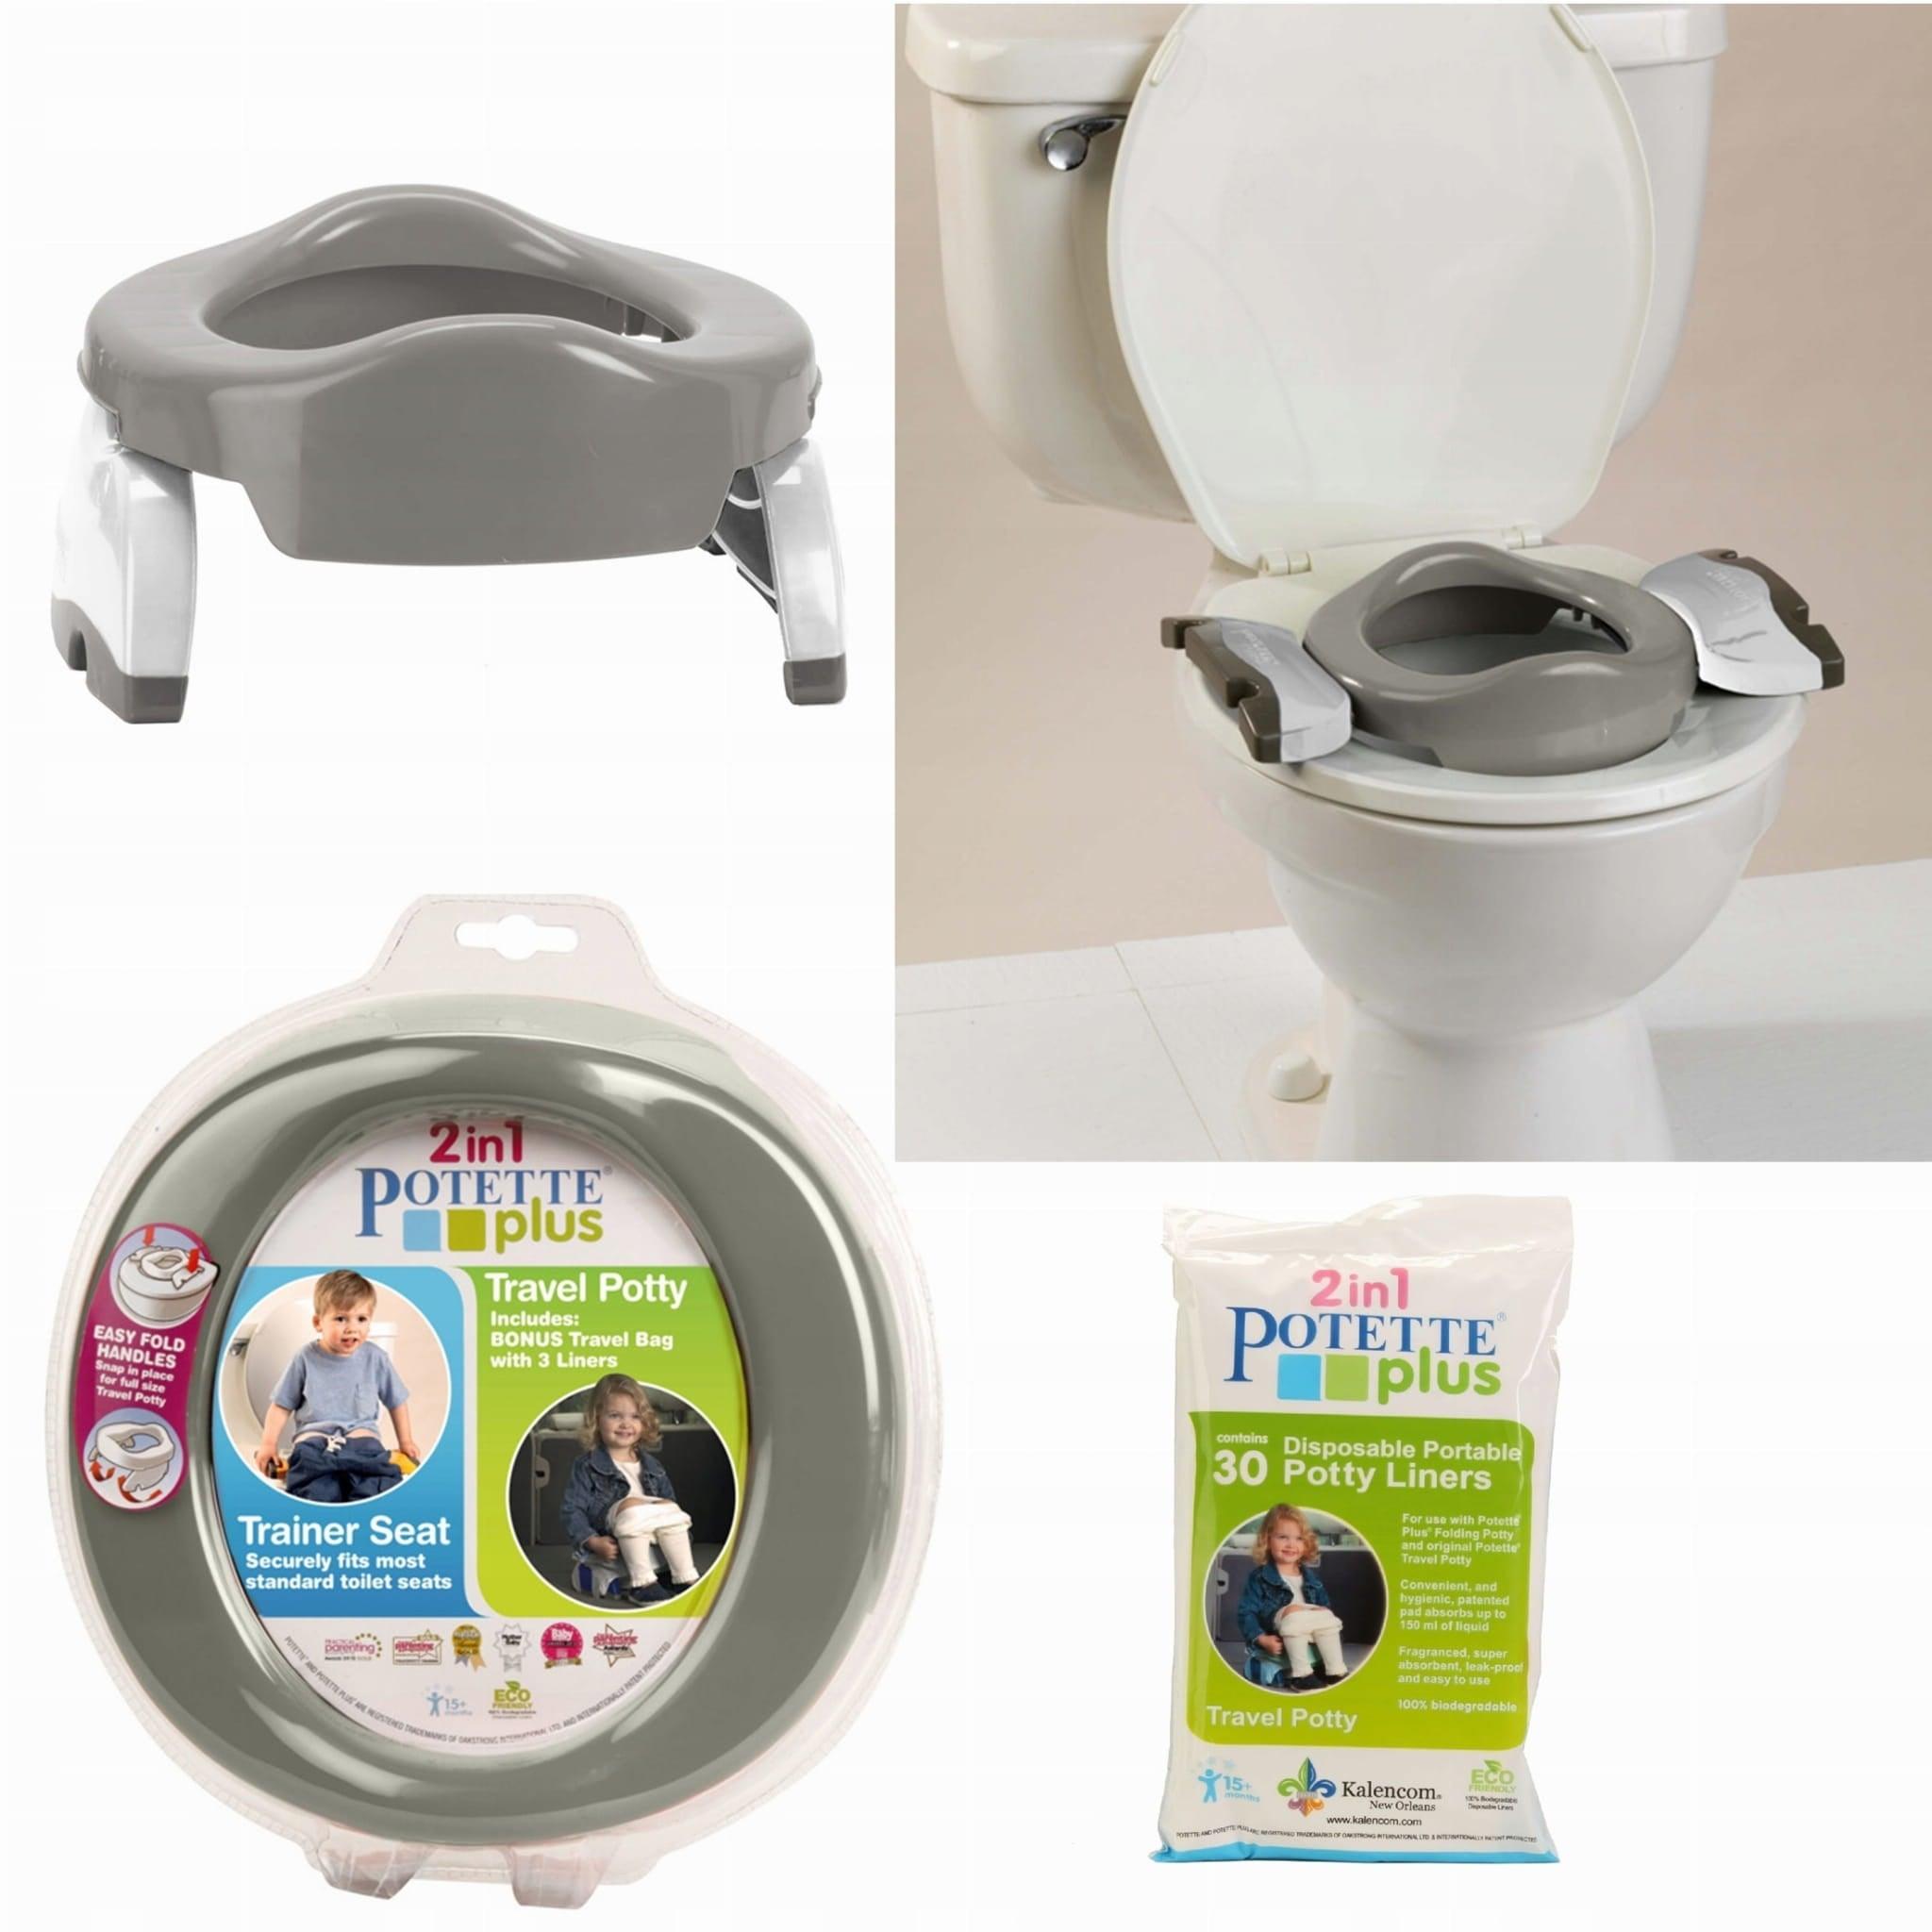 Potette Plus: turystyczny nocnik i nakładka na toaletę 2w1 Travel Potty - Noski Noski